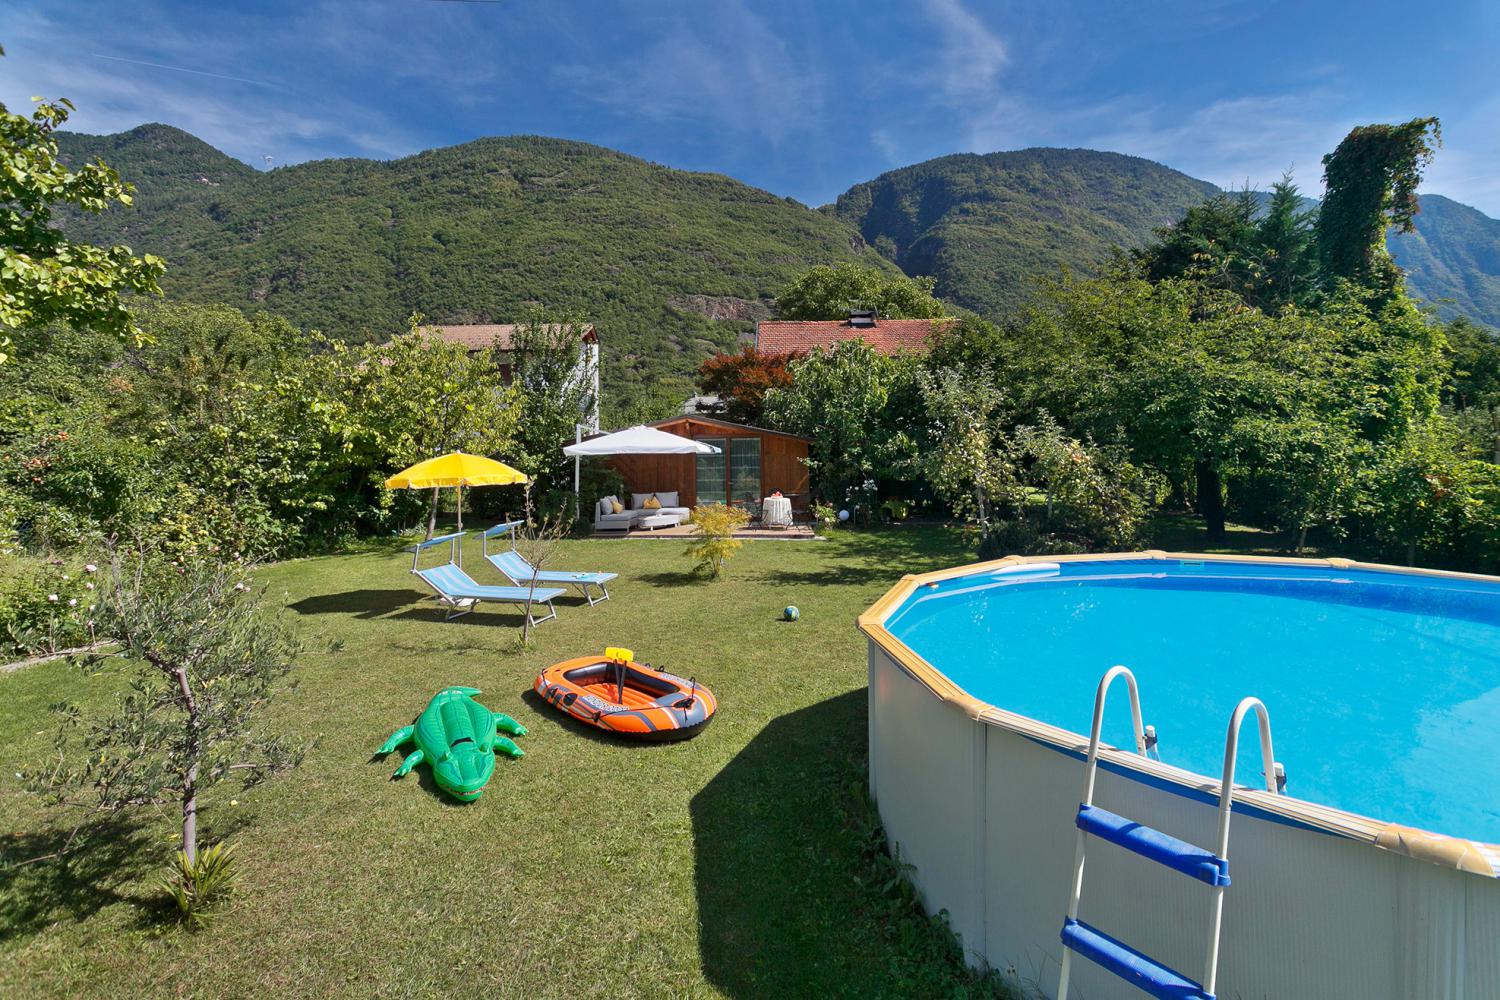 La piscina all'aperto - Appartamenti a Gargazzone